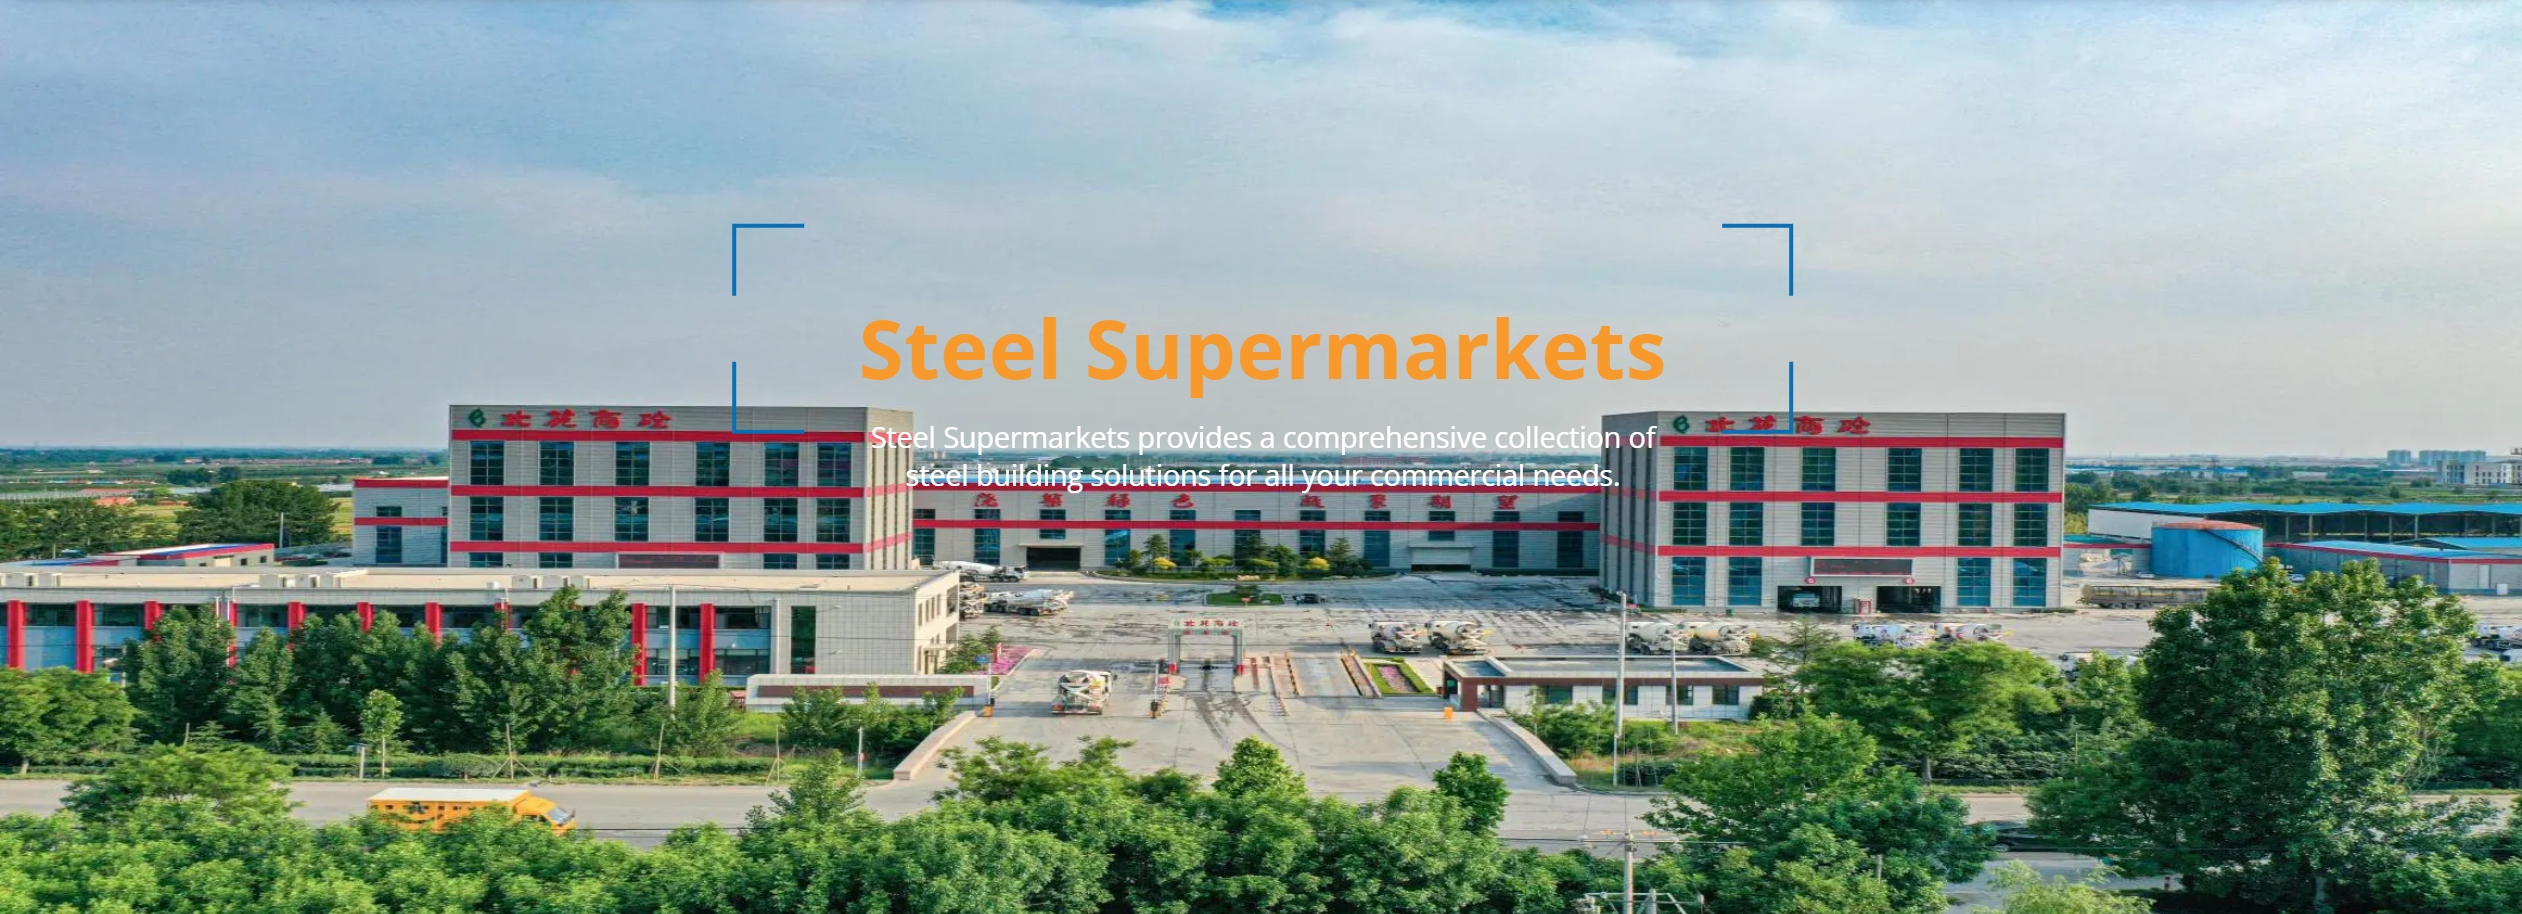 Steel Supermarkets